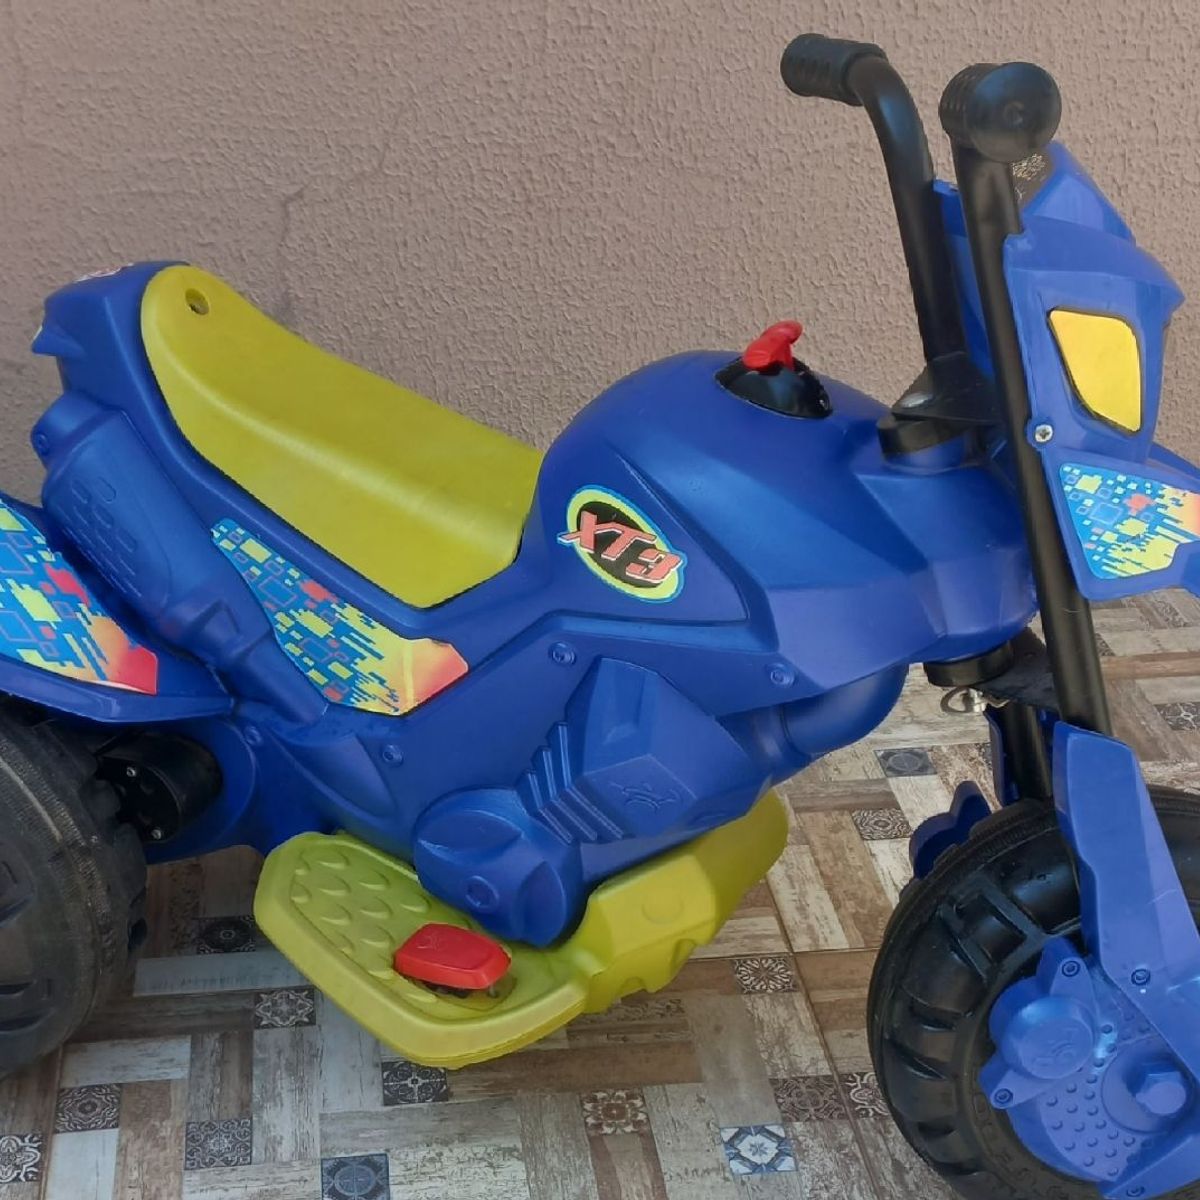 Moto Elétrica Infantil, Brinquedo Bandeirantes Usado 90699336